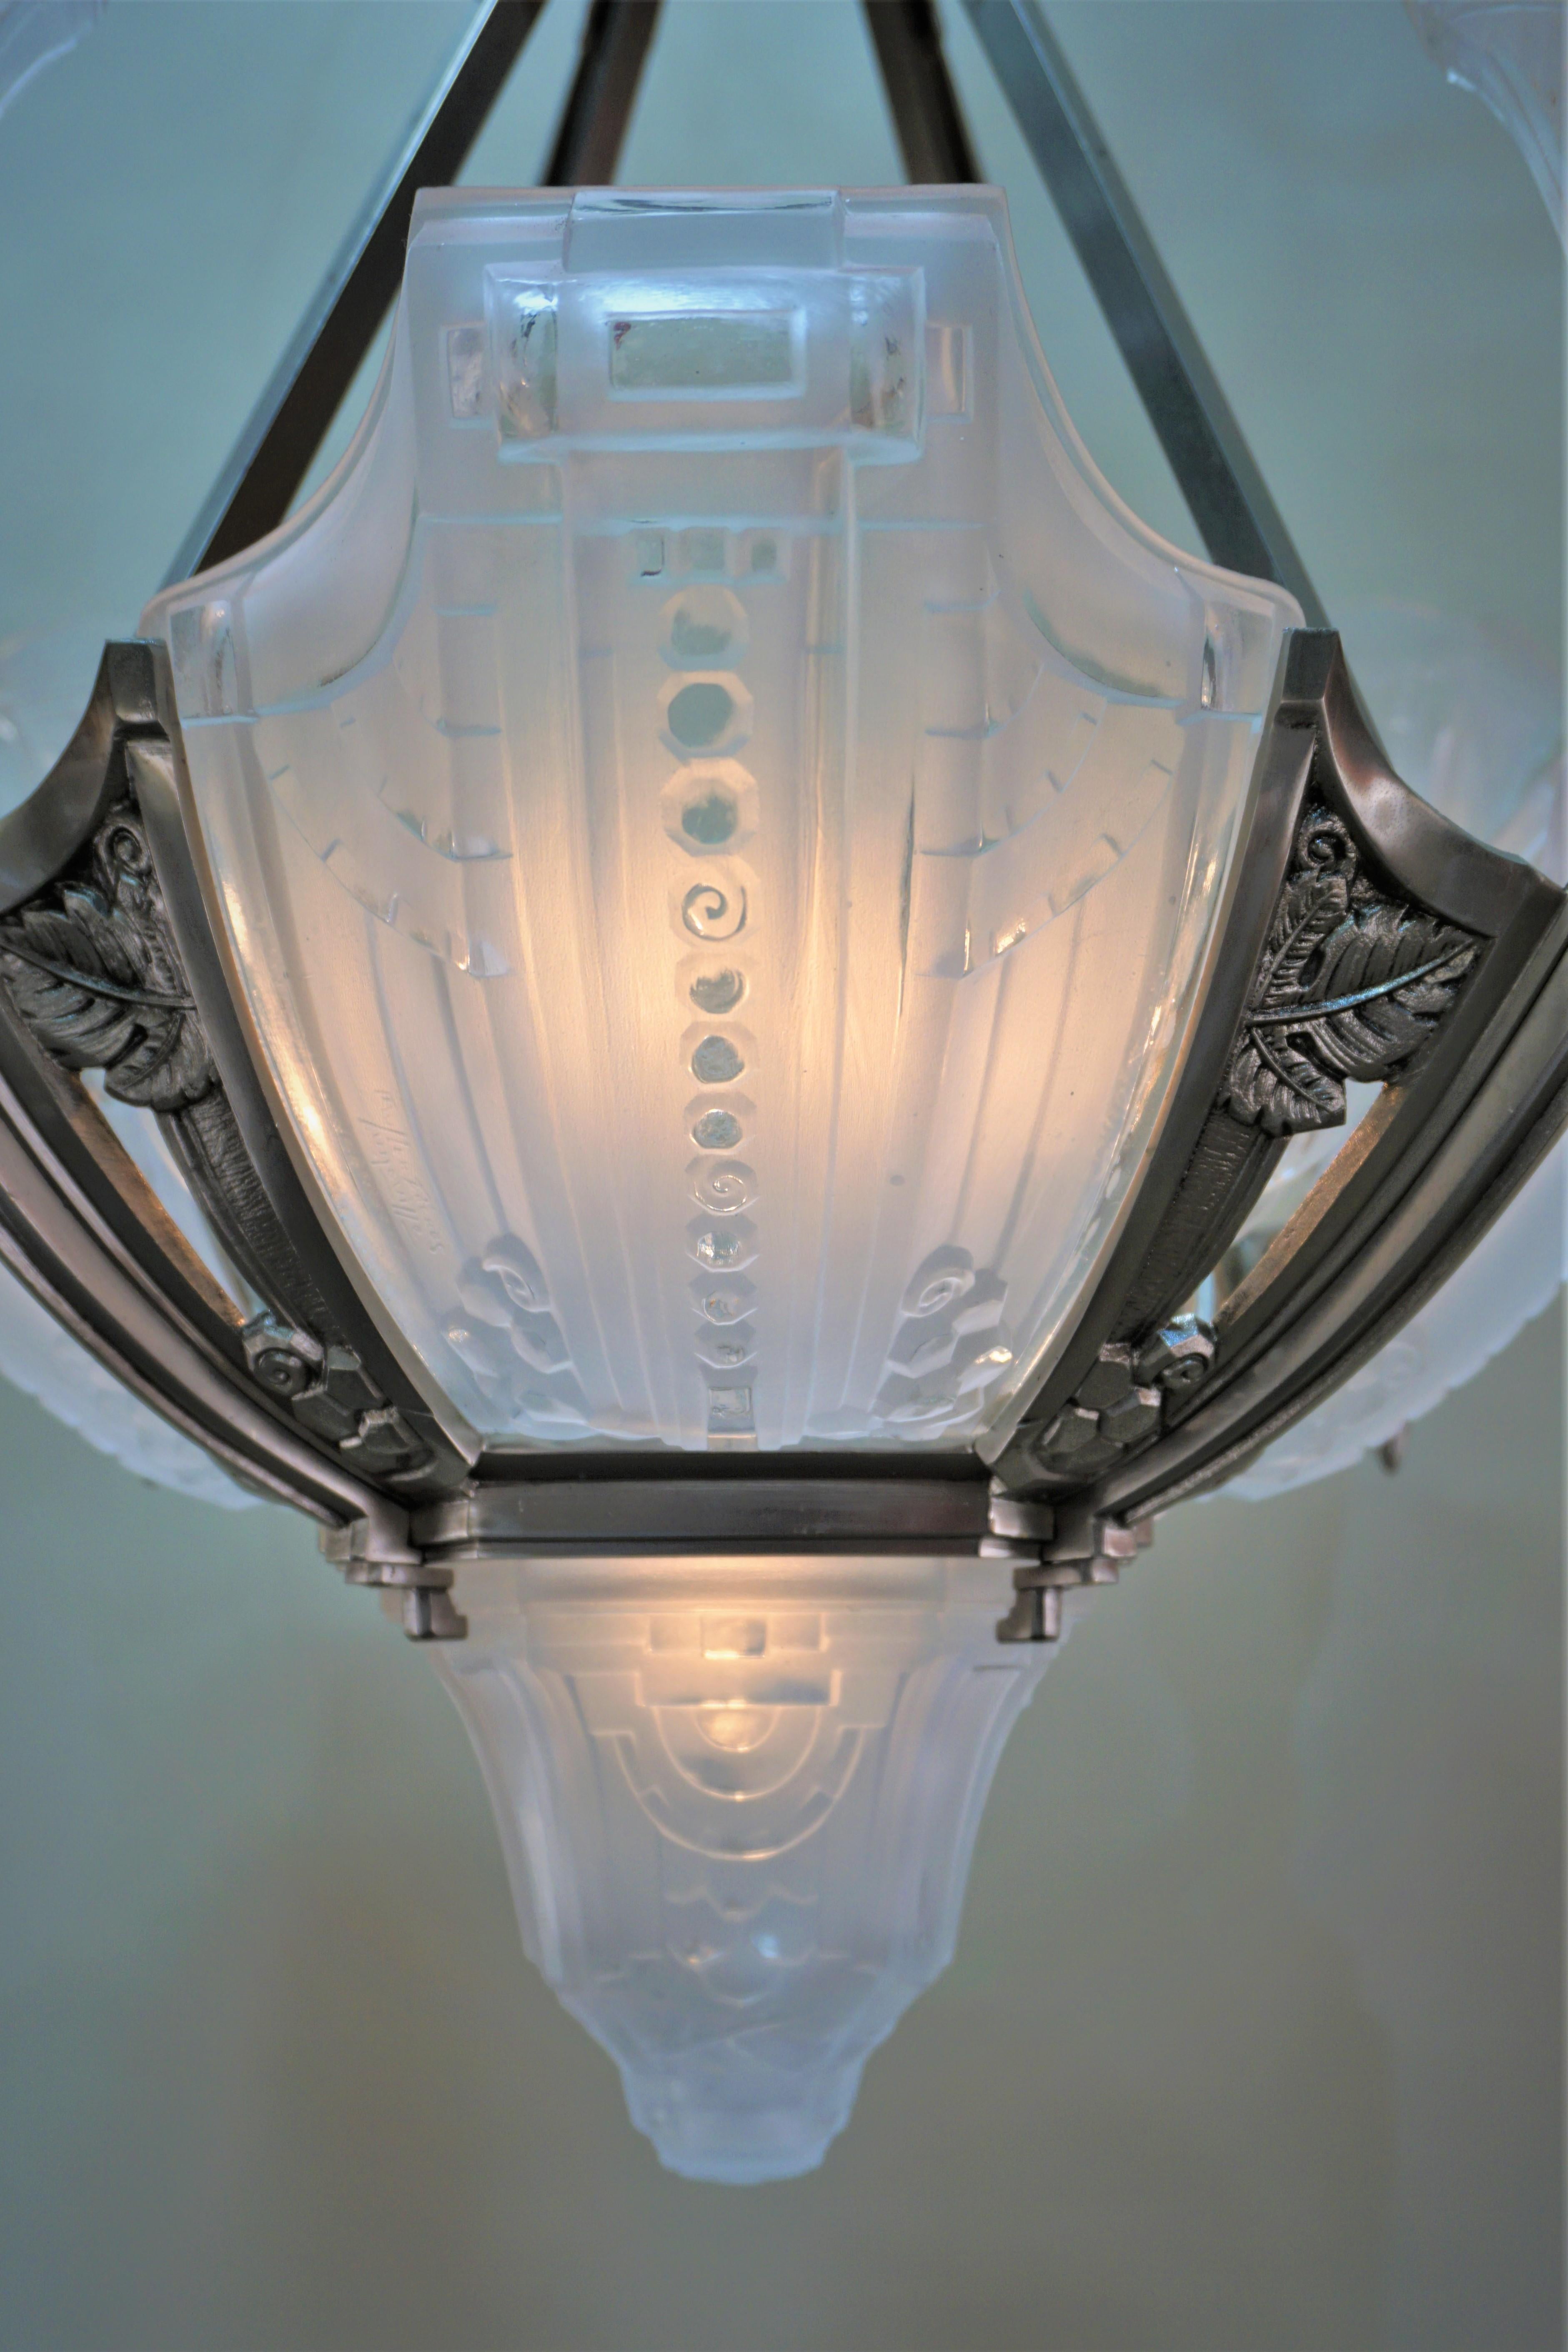 1920 art deco chandelier